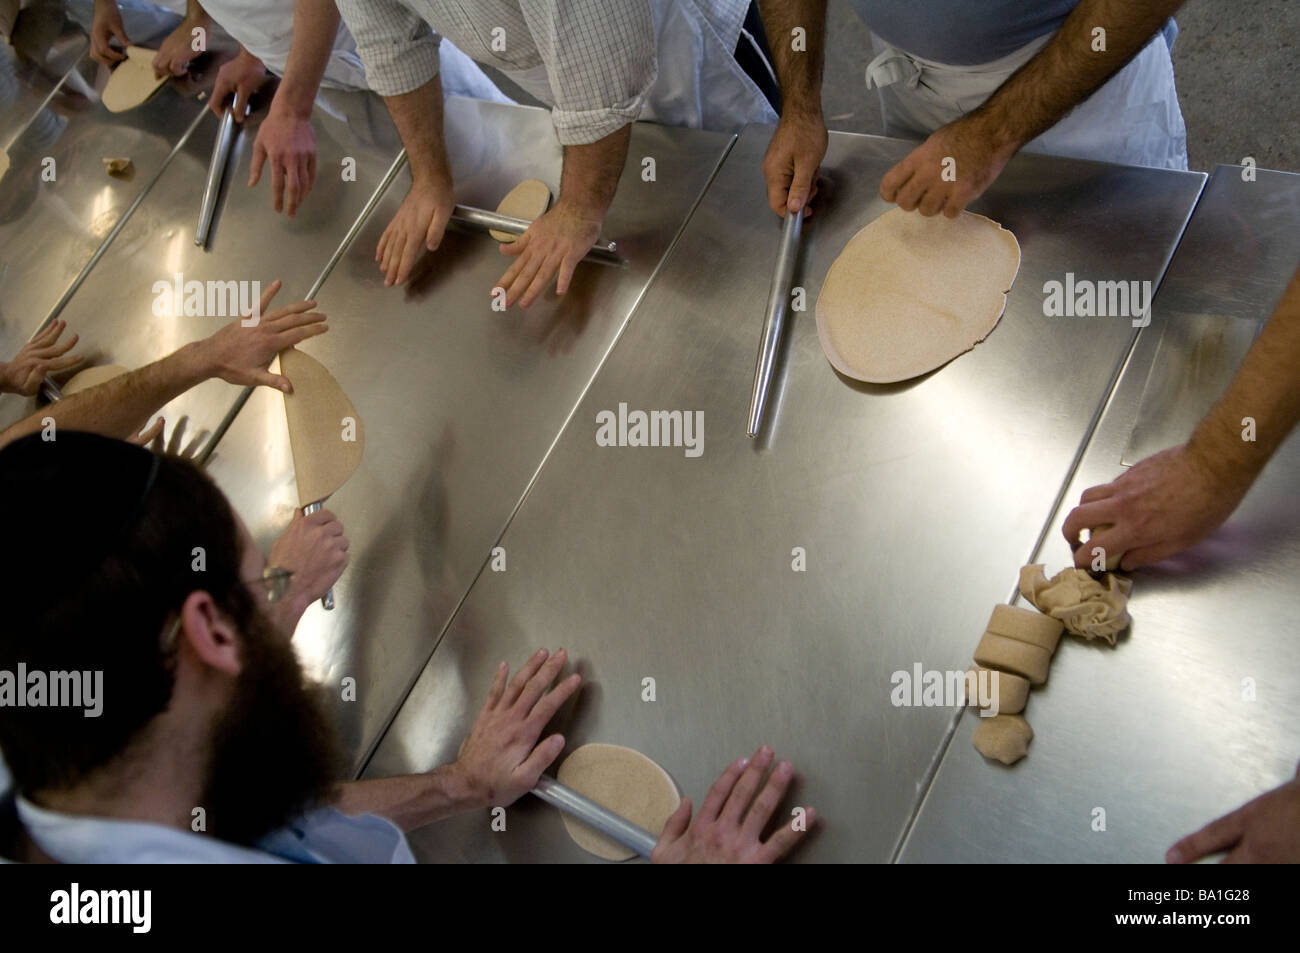 Orthodoxe Juden kneten Matzo Teig in einer Bäckerei für traditionelle Handgemachtes Passah ungesäuertes Matzo-Brot in Kfar Chabad Bäckerei in Zentralisraelisch Stockfoto